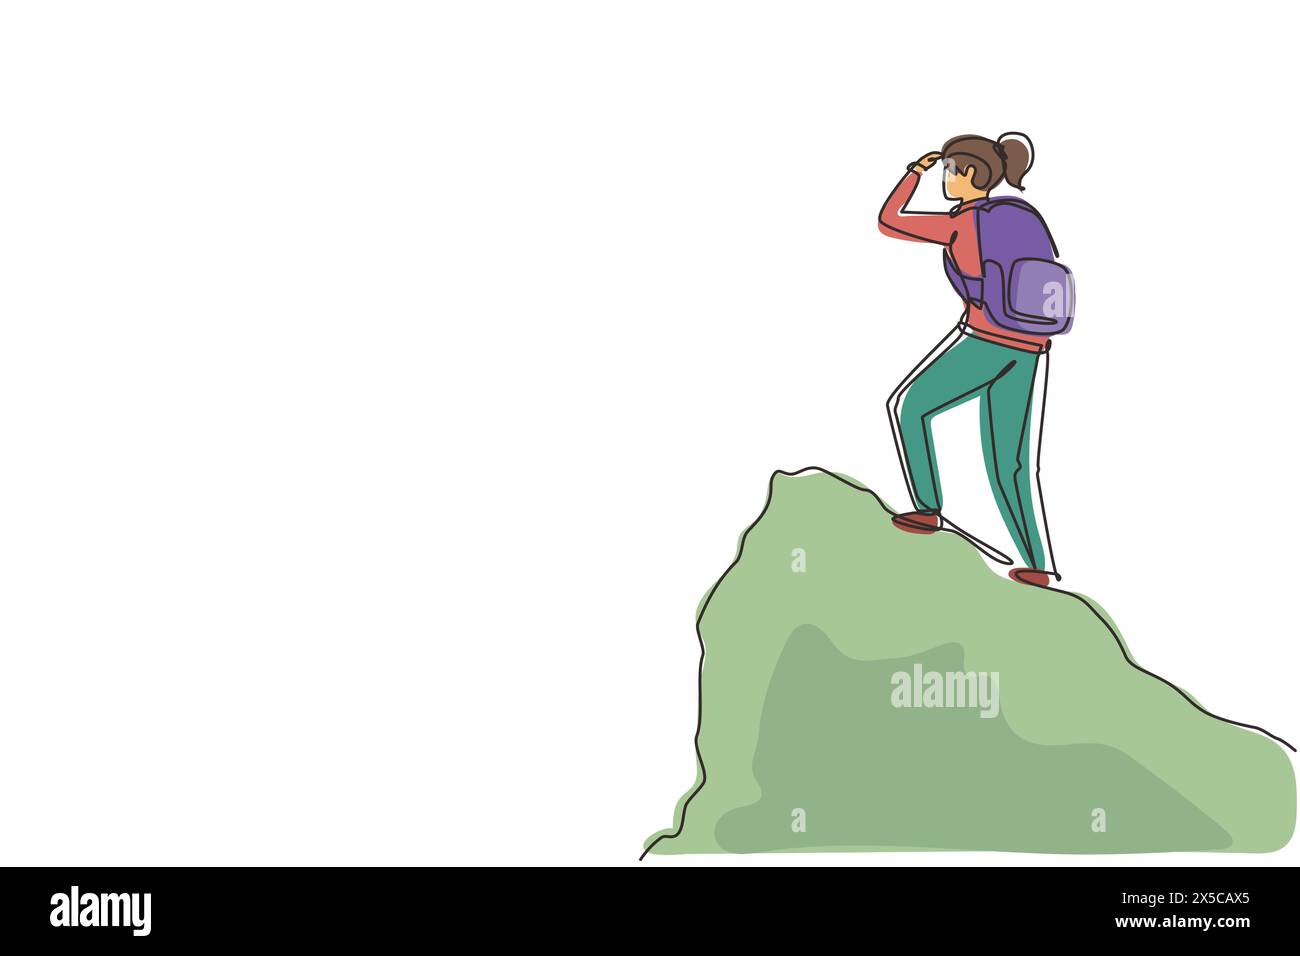 Durchgehende einzeilige Zeichnung einer Reisenden oder Entdeckerin, die auf einem Berg oder einer Klippe steht und gerade aussieht. Entdeckungen, Erkundungen, Wandern, Trav Stock Vektor